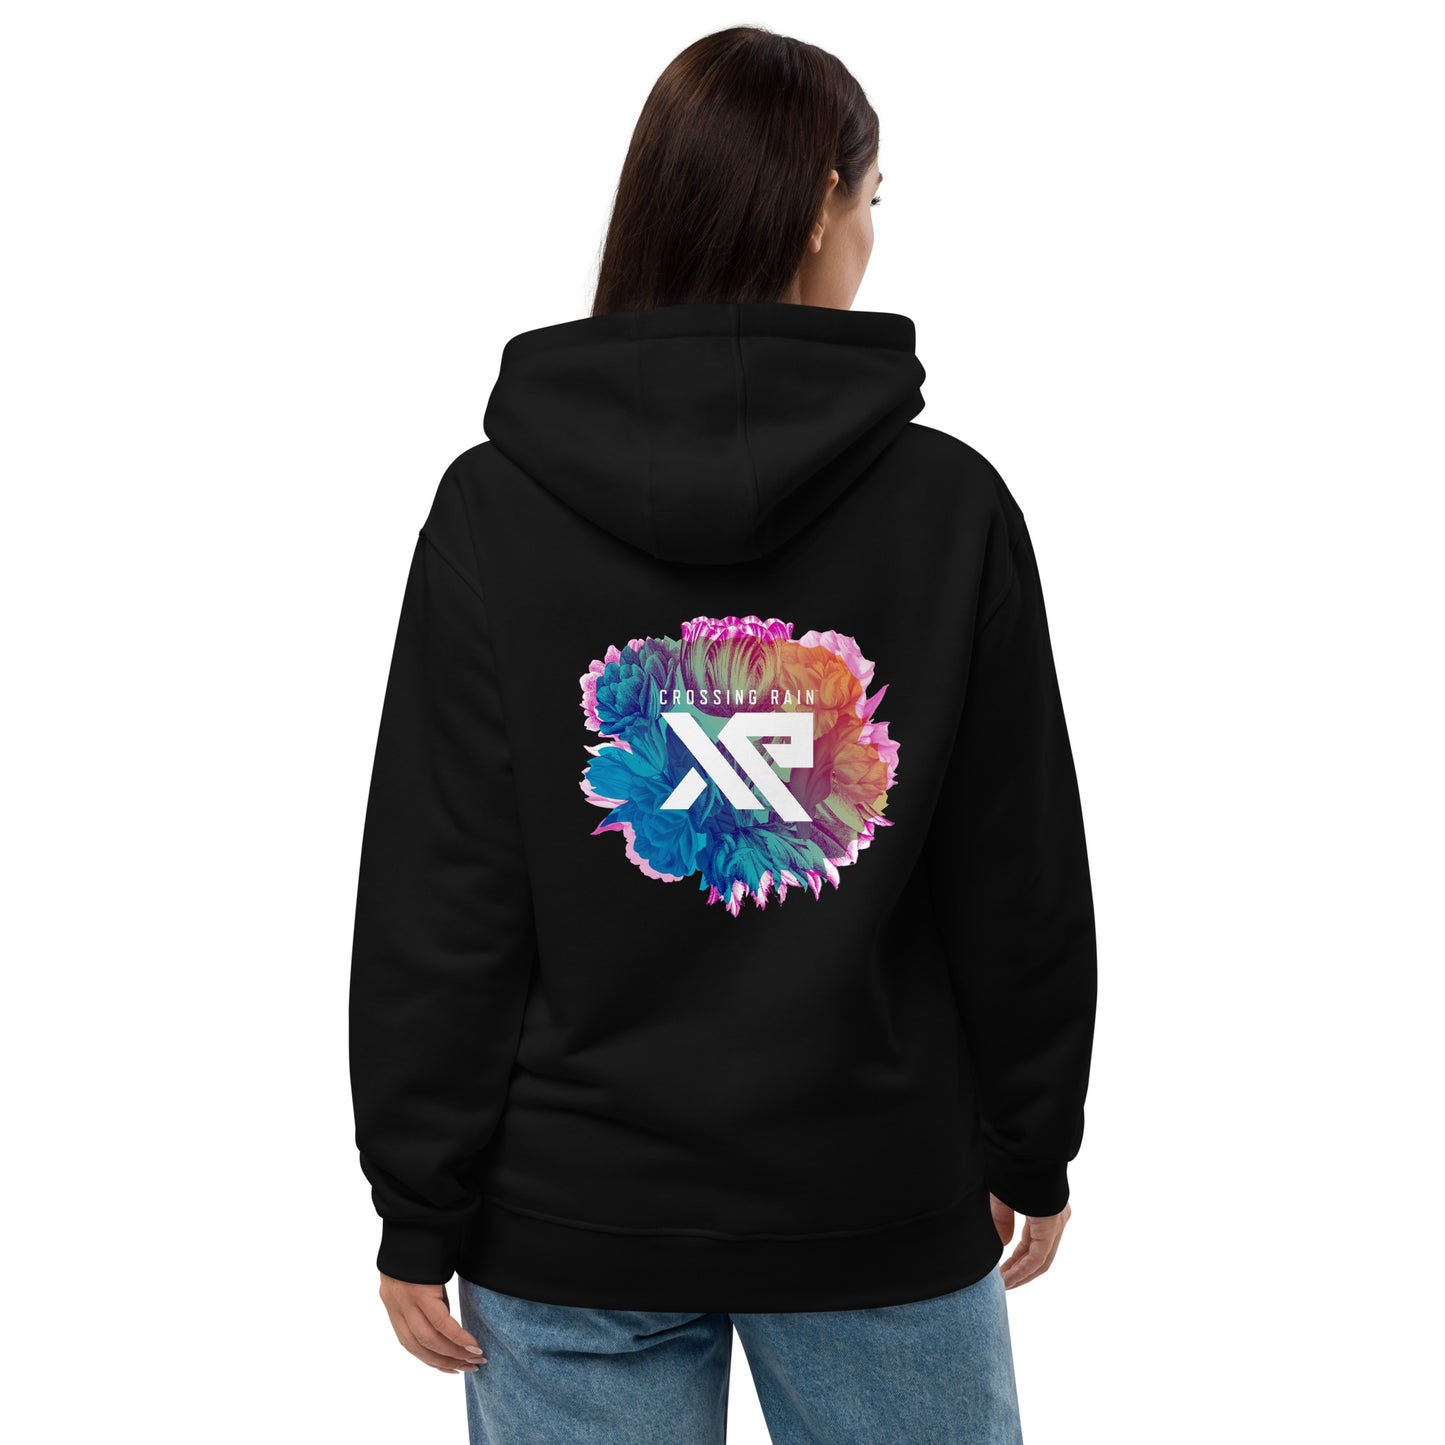 XR FLORAL Premium eco hoodie